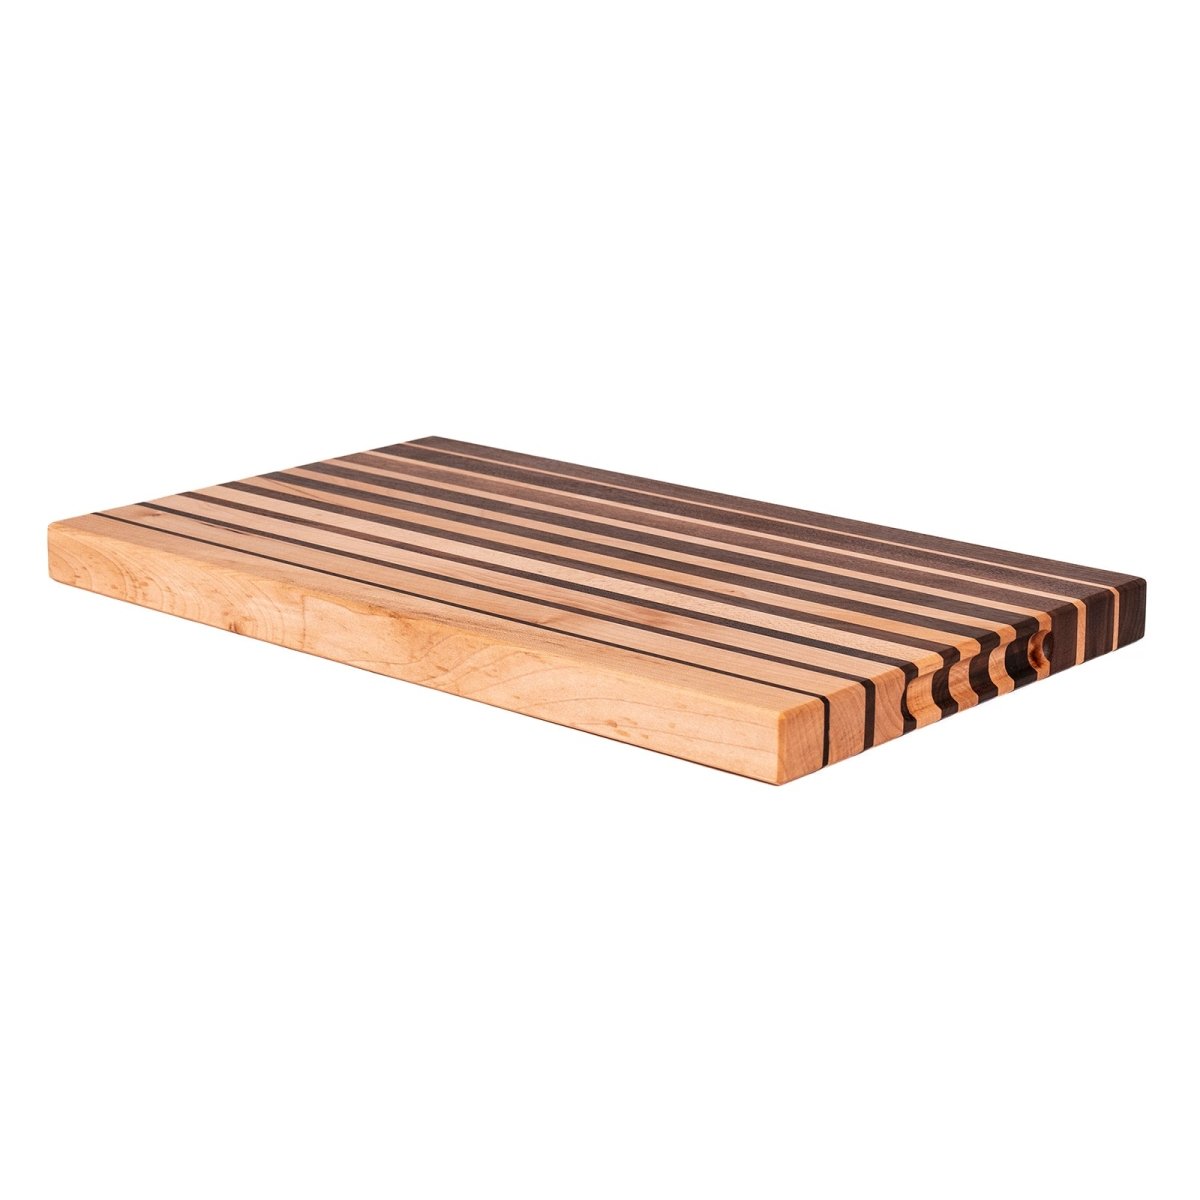 Tagliere in legno di acero di design - Made in Italy